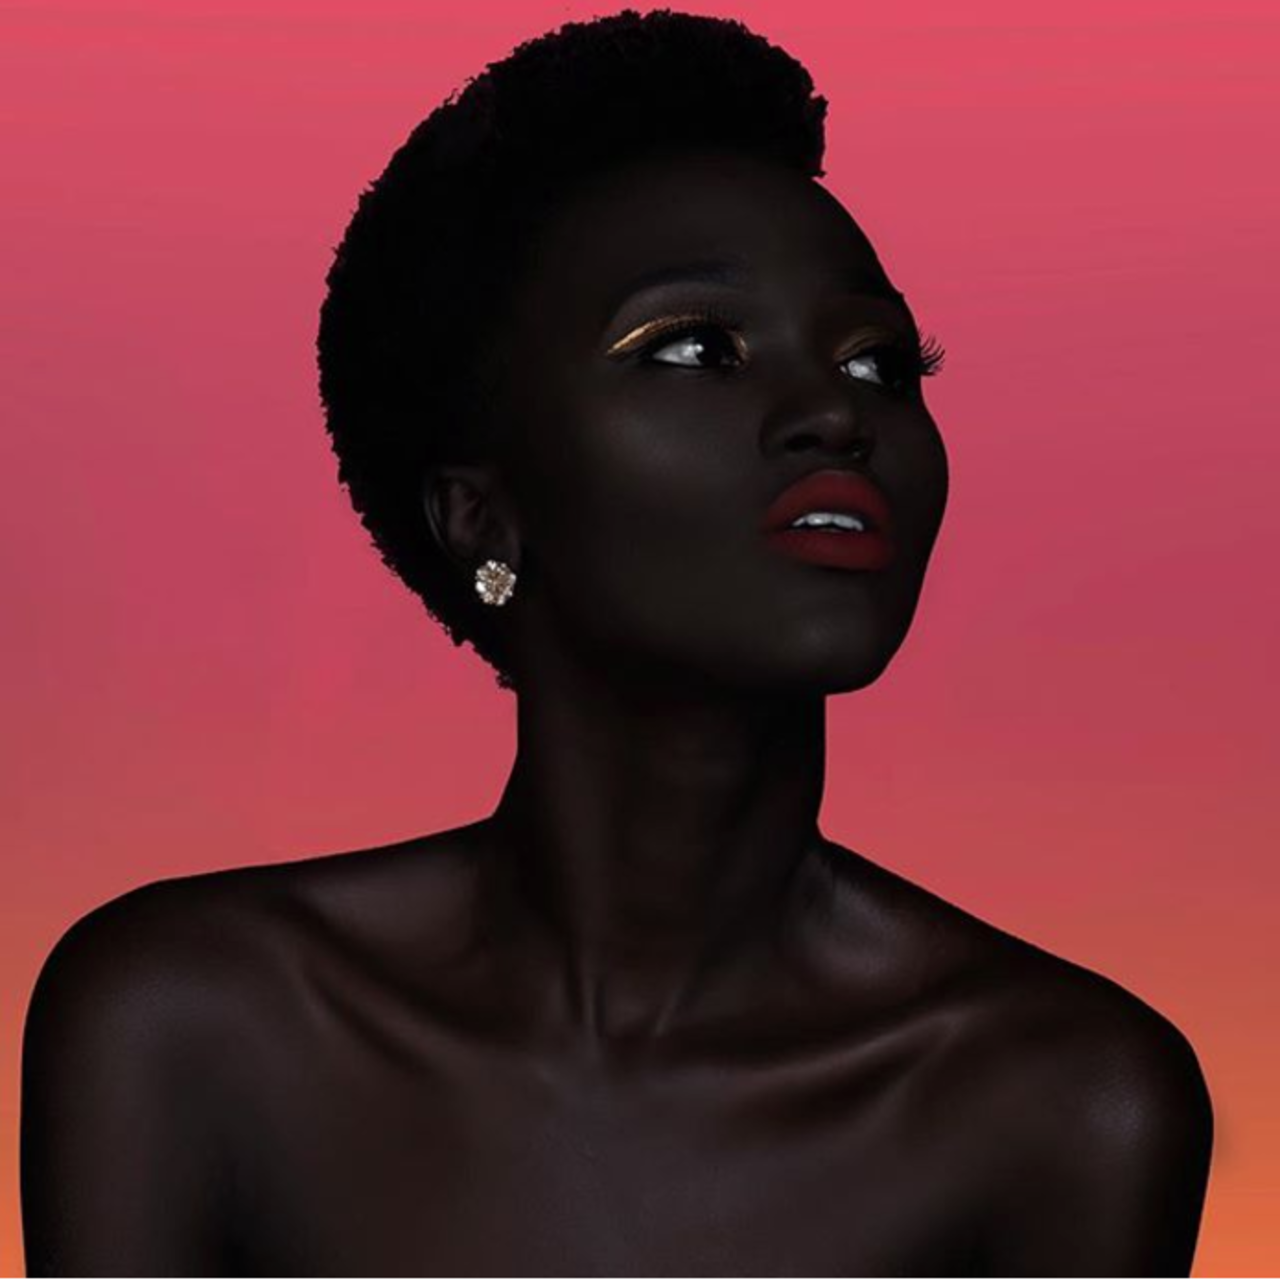 Кричащая негритянка. Няким Гатвеч. Королева тьмы - Ньяким Гатвех - модель из Южного Судана. Няким Гатвех - "Королева тьмы" из Южного Судана. Ньяким Гатвеч модель.